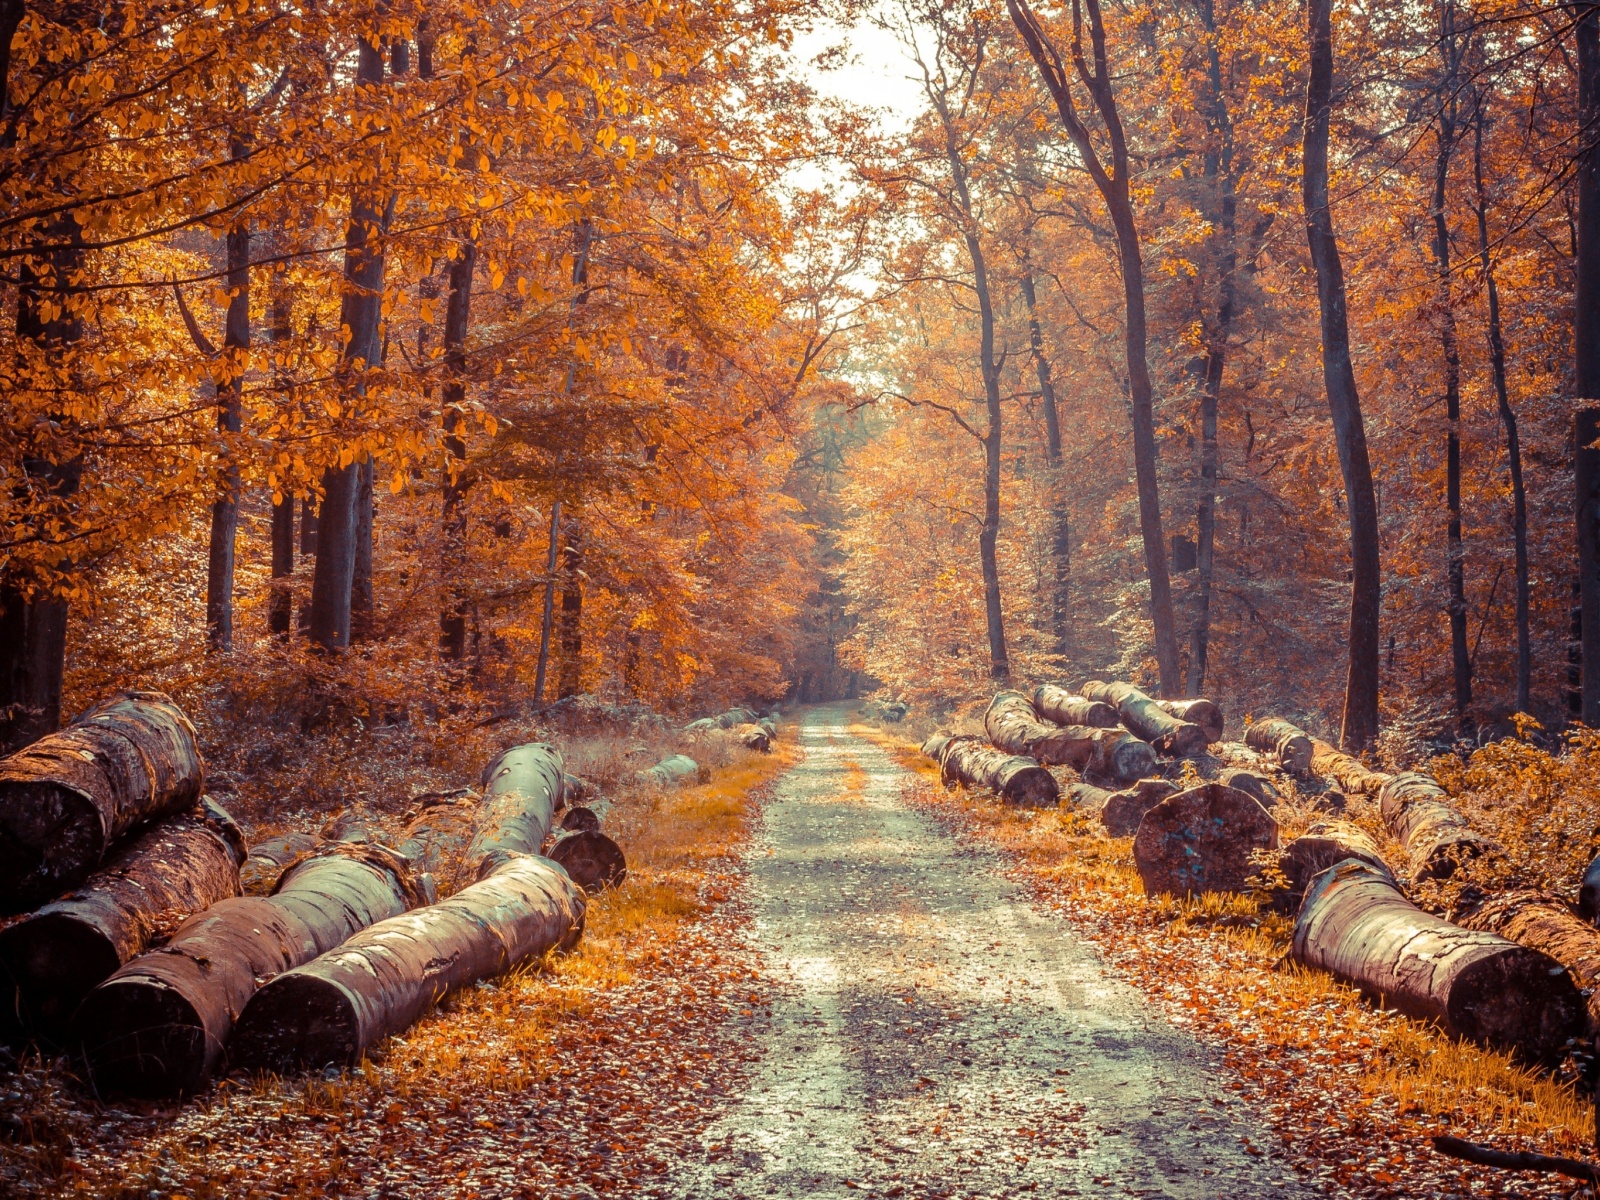 Das Road in the wild autumn forest Wallpaper 1600x1200